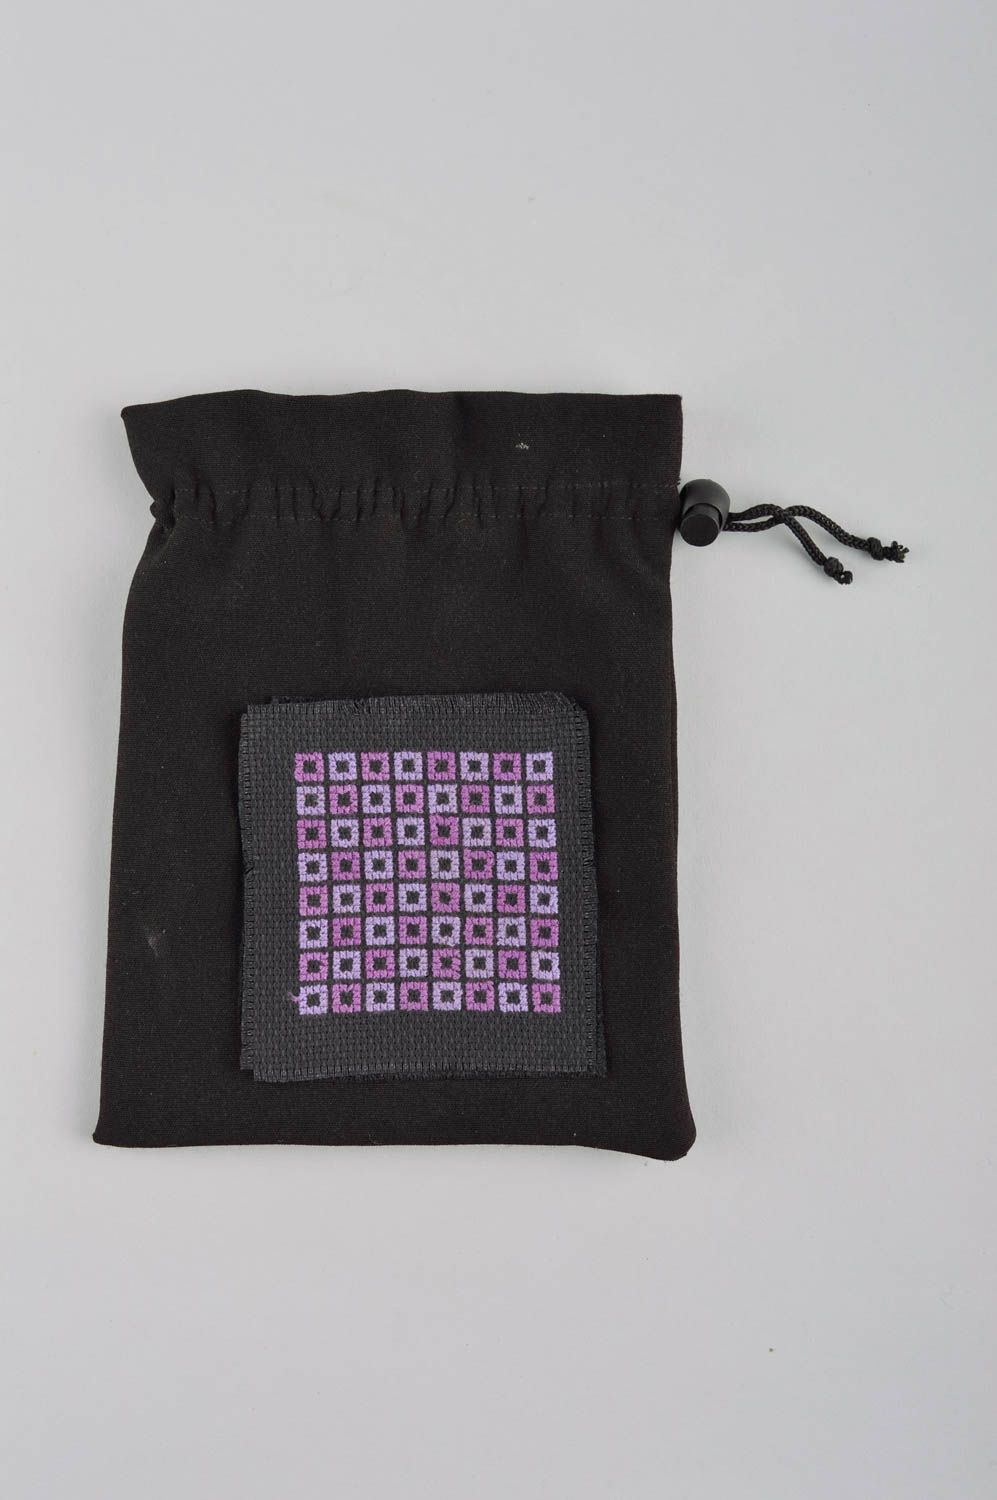 Stylish handmade fabric pouch beautiful fabric purse fashion accessories photo 2